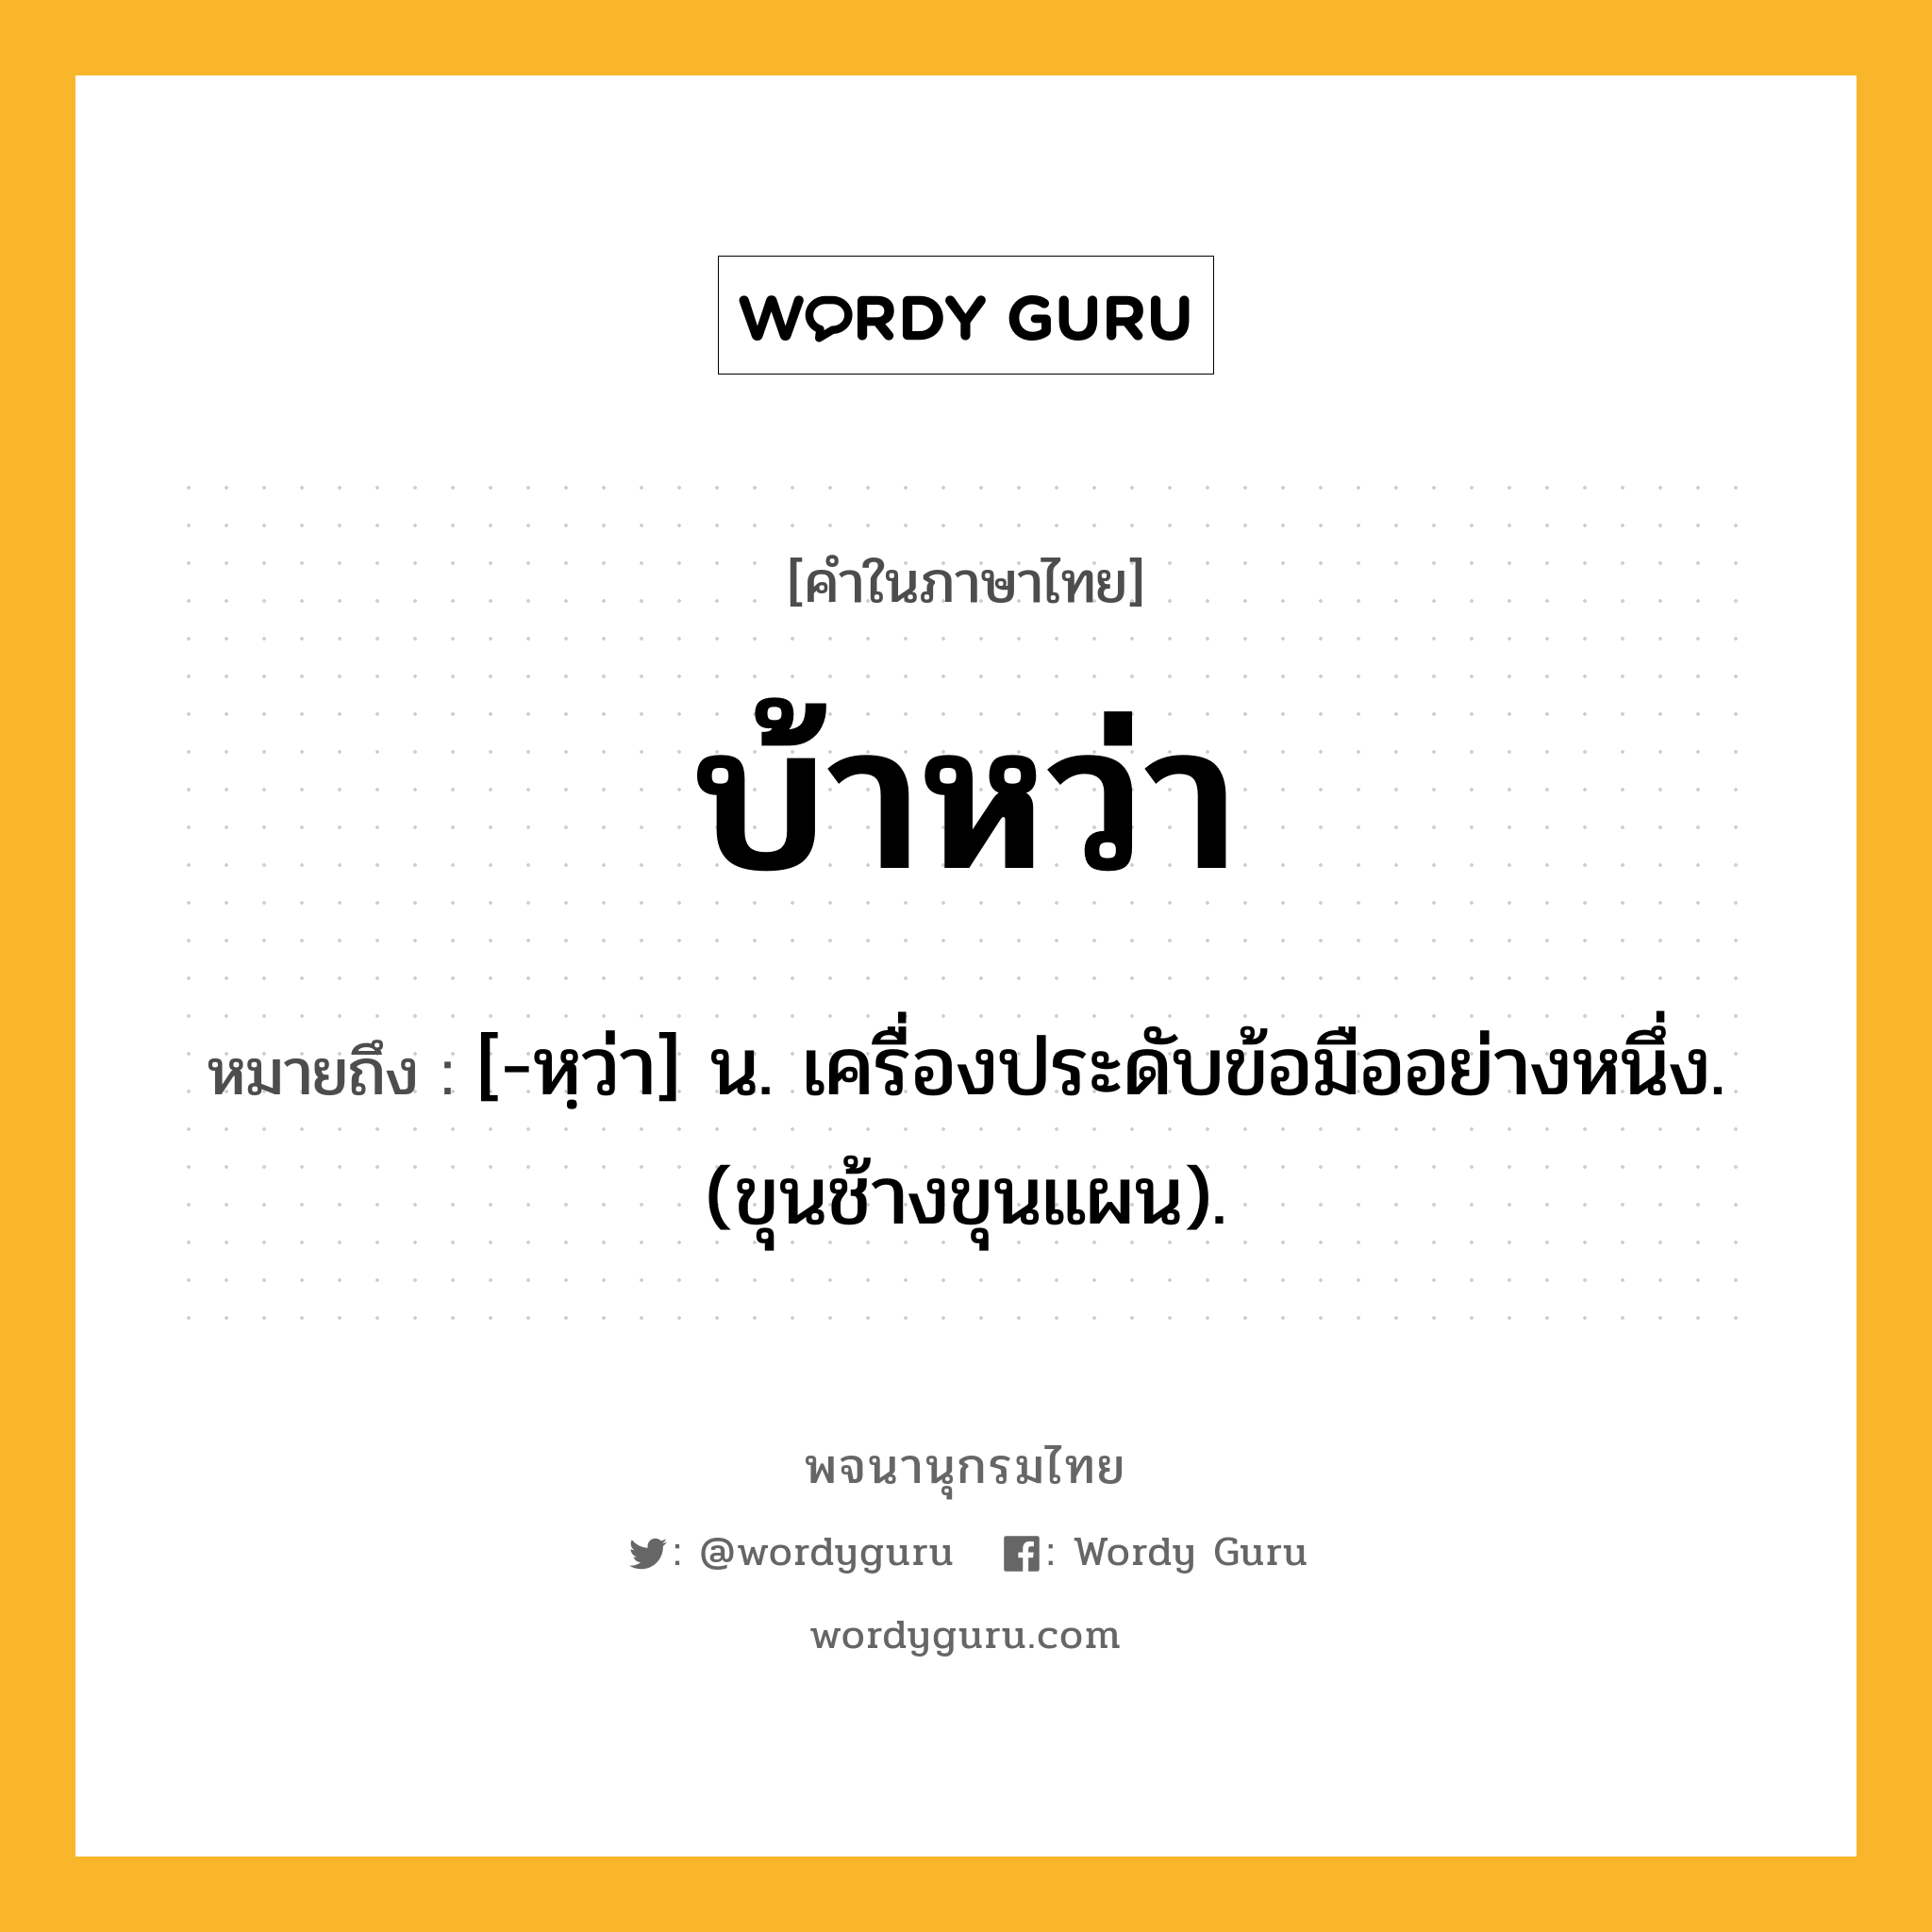 บ้าหว่า หมายถึงอะไร?, คำในภาษาไทย บ้าหว่า หมายถึง [-หฺว่า] น. เครื่องประดับข้อมืออย่างหนึ่ง. (ขุนช้างขุนแผน).